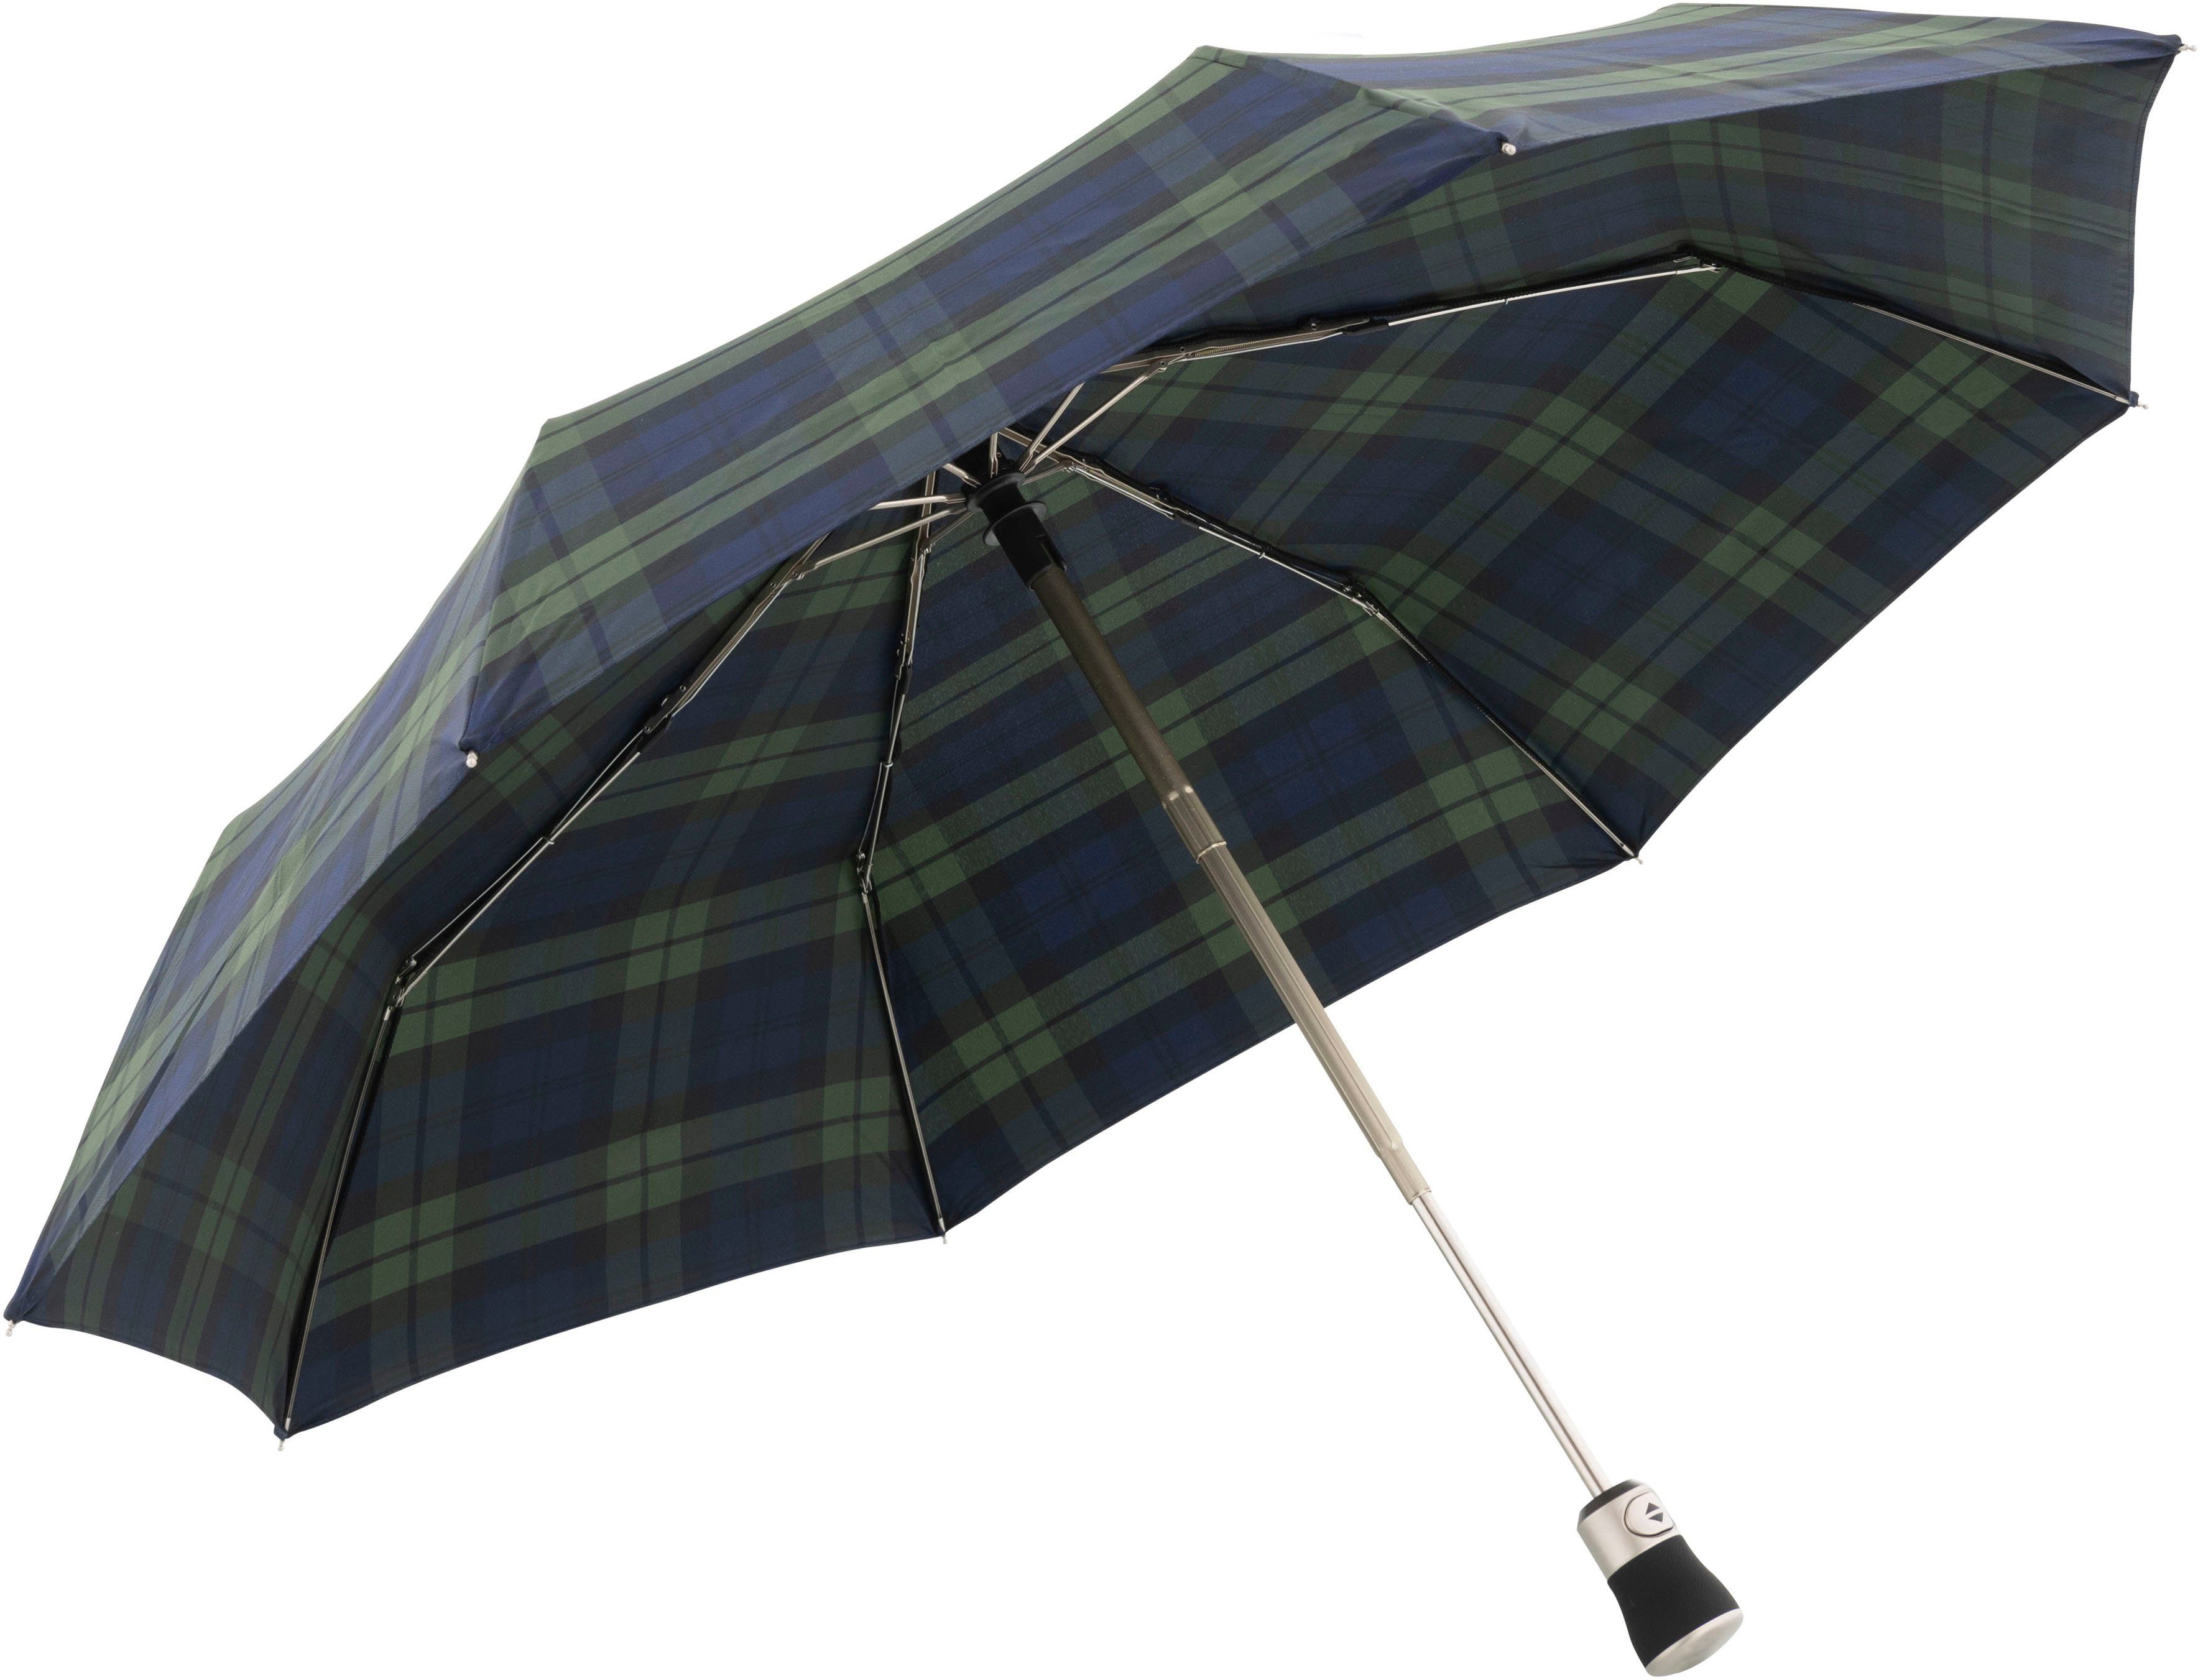 Europe Taschenregenschirm in doppler MANUFAKTUR Classic, grün/blau, karo Made